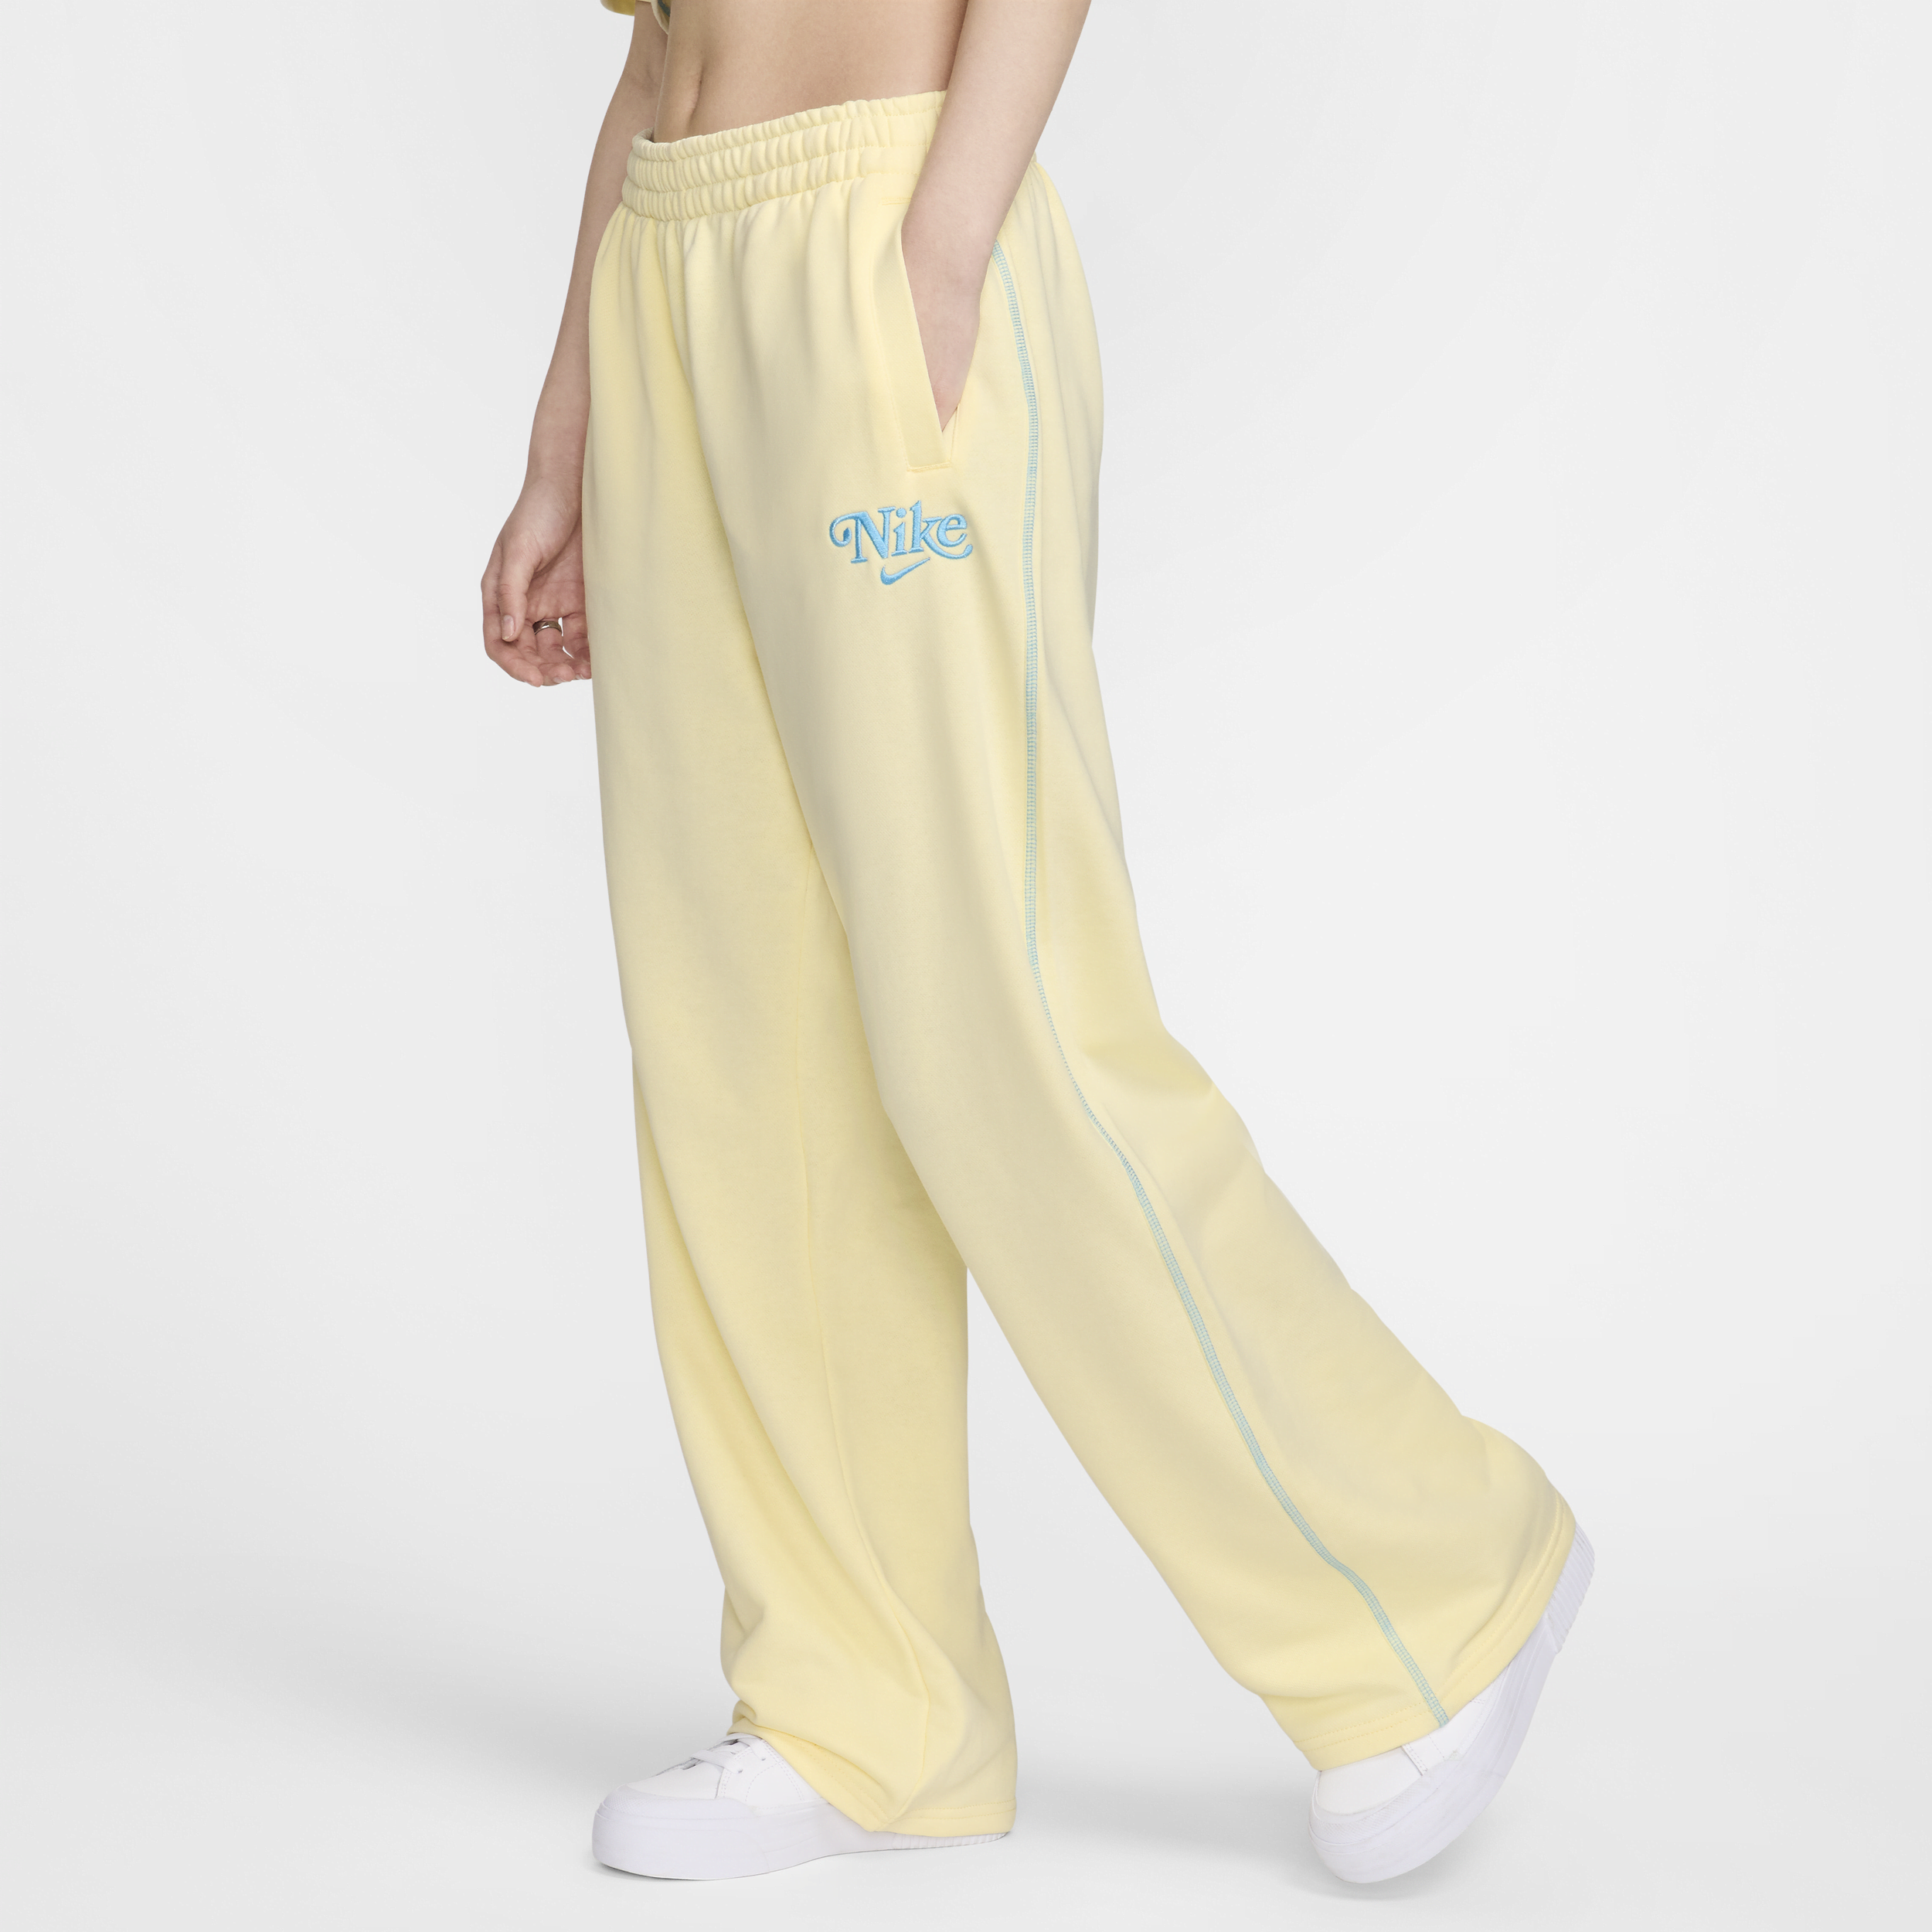 Pantaloni in fleece Nike Sportswear - Donna - Marrone